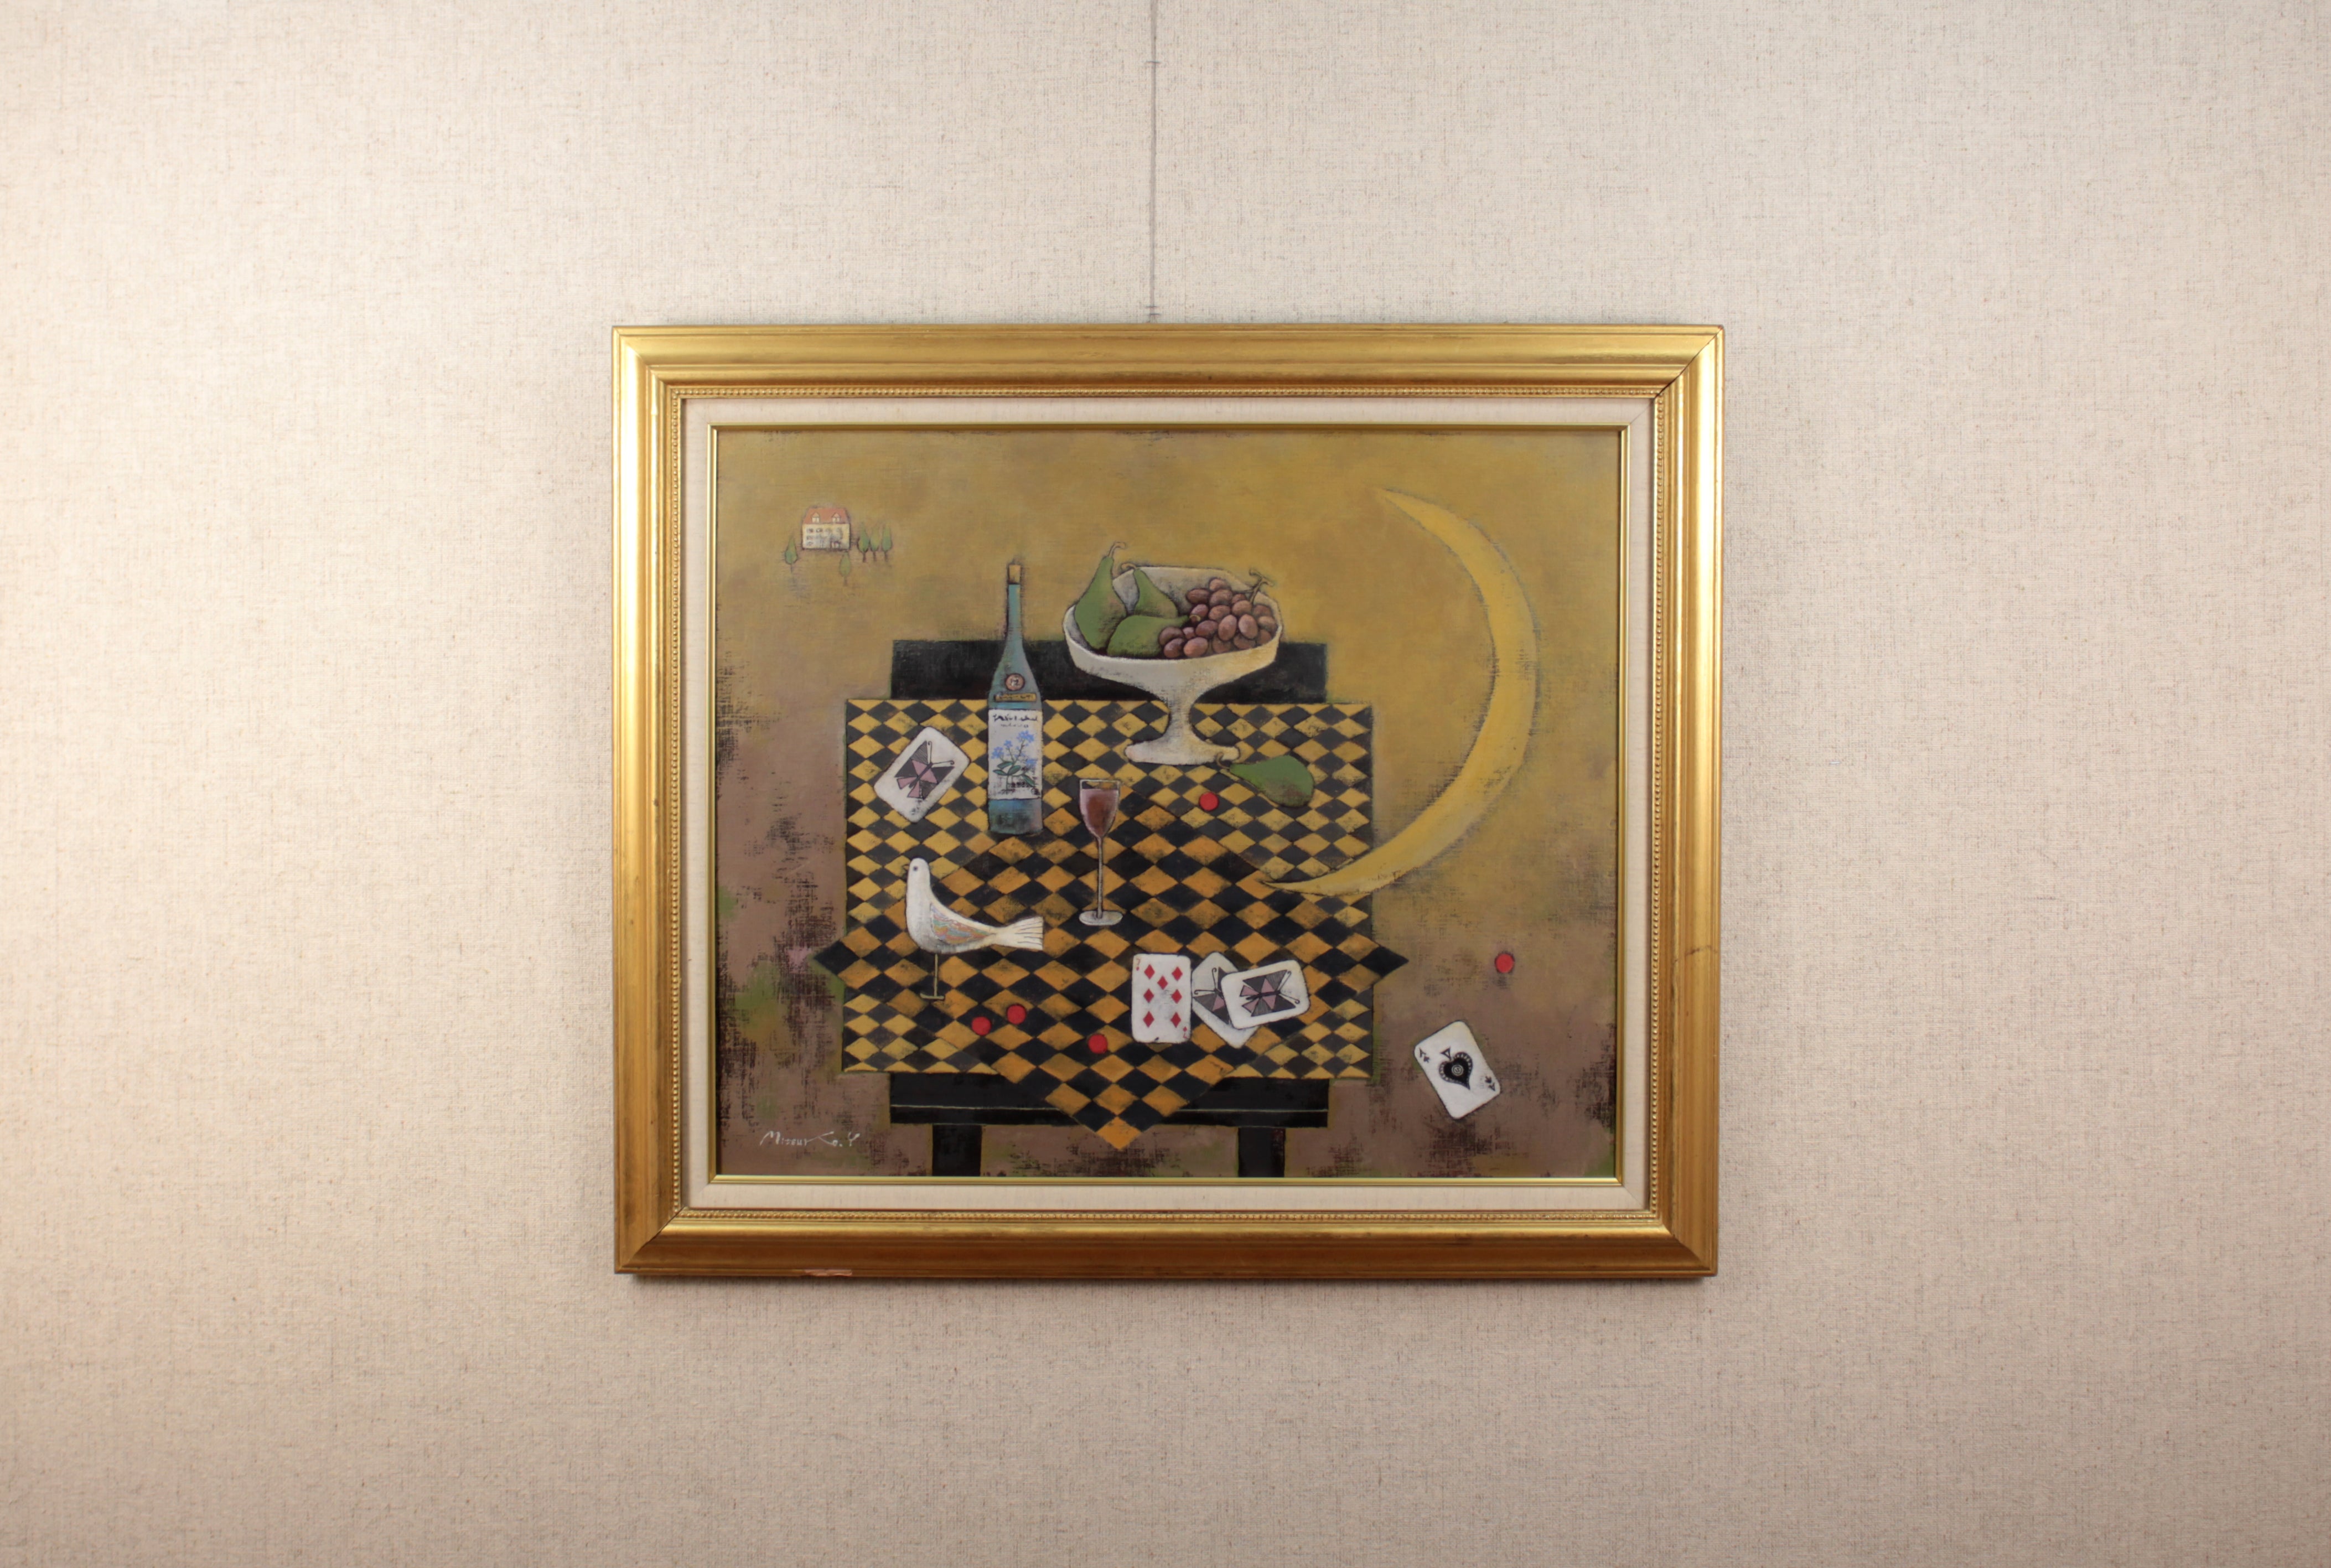 吉井光子 『月夜の出来事』 油彩画 - 北海道画廊